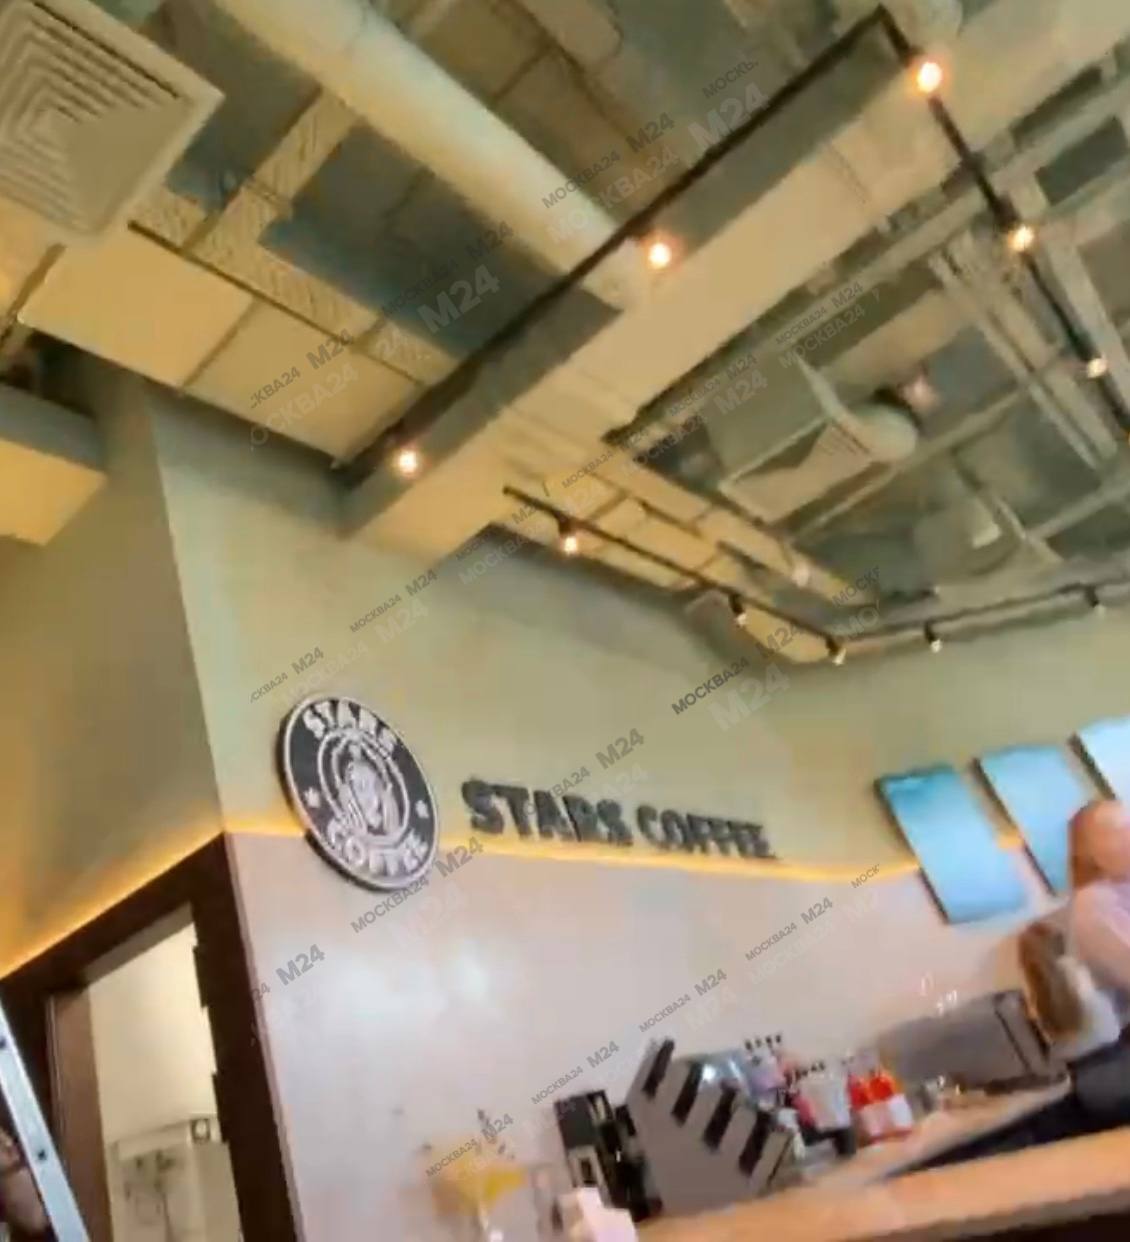 Замість Starbucks з русалкою на логотипі в Росії працюватиме Stars coffee з дівчиною у кокошнику на фірмовому знаку